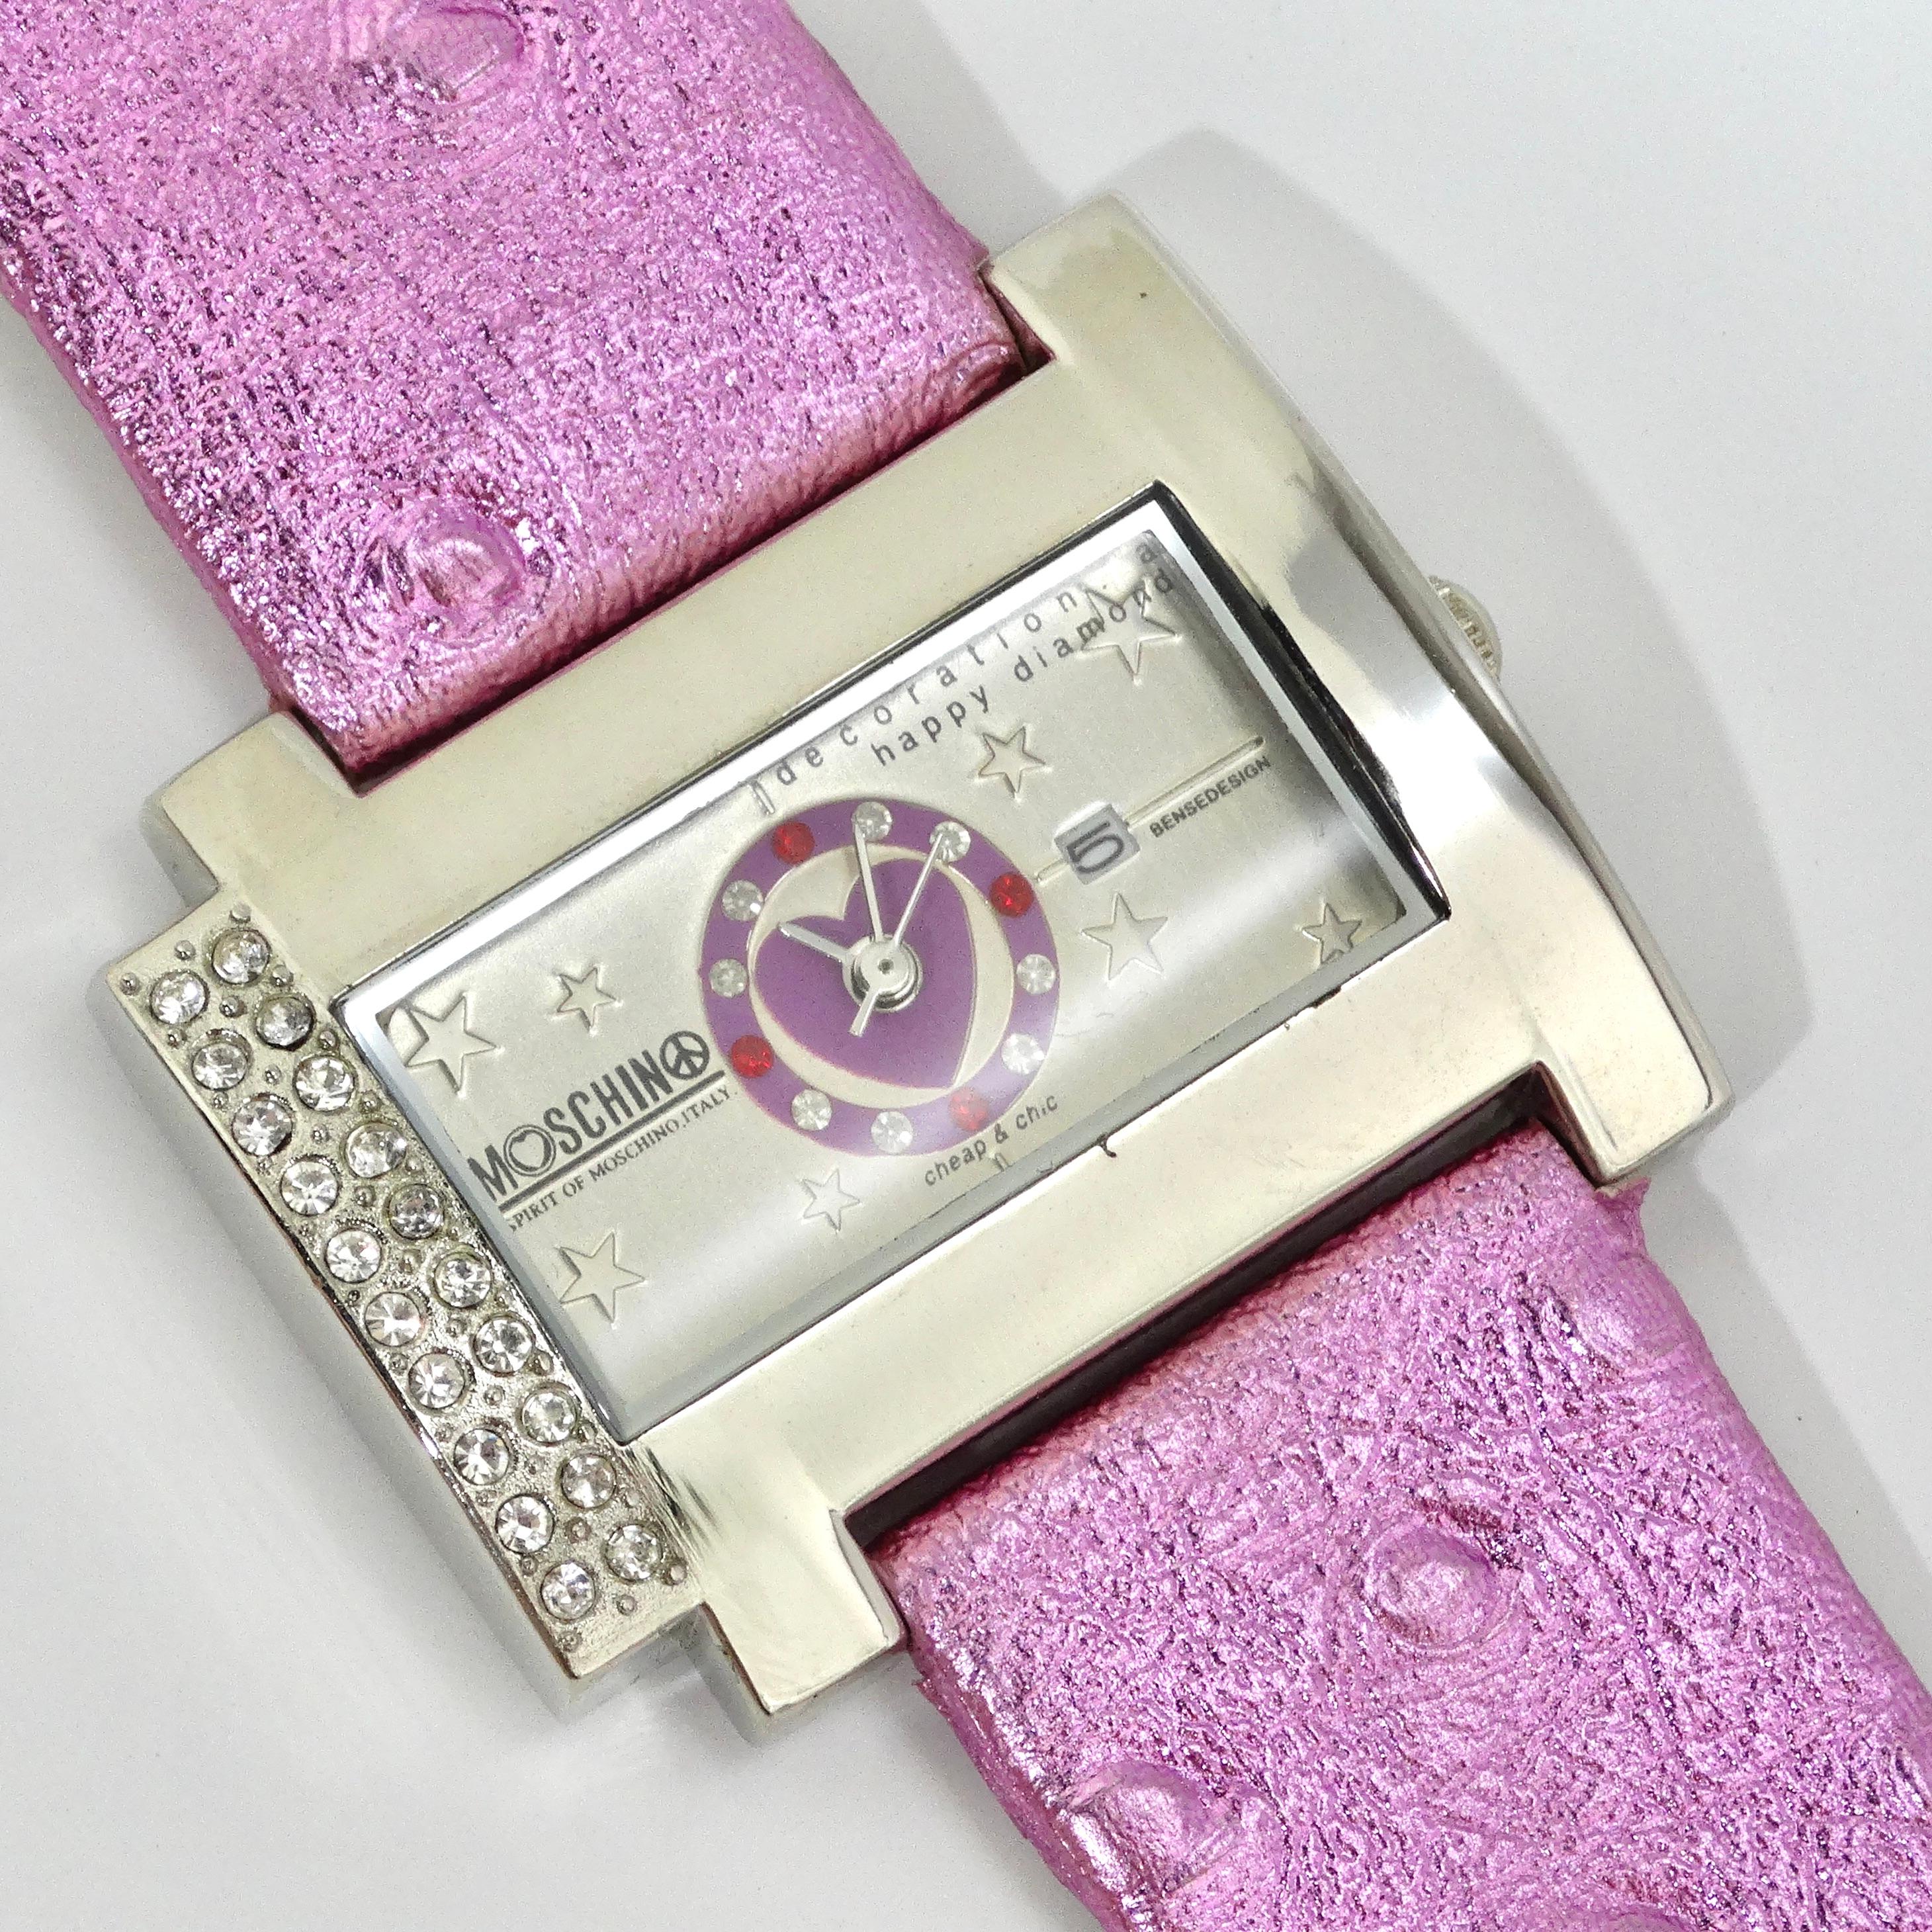 Die bezaubernde Moschino 1980s Pink Crystal Watch ist ein bezaubernder Zeitmesser im Vintage-Stil, der verspielte Eleganz und lebendigen Stil ausstrahlt. Diese bezaubernde Deadstock Moschino Uhr hat ein pinkfarbenes Kunstlederarmband mit